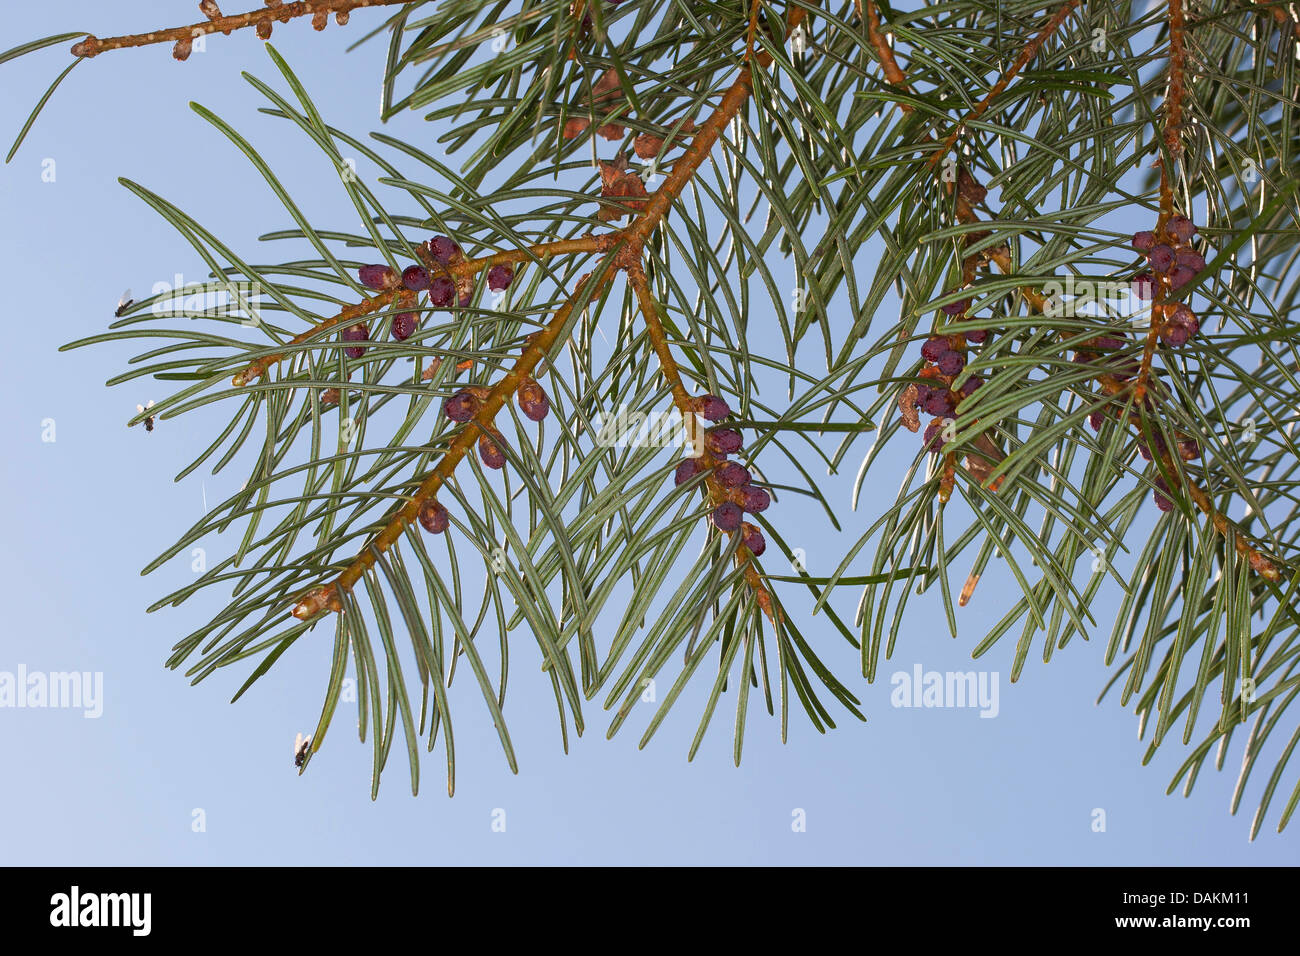 White fir, Colorado fir (Abies concolor), branches Stock Photo